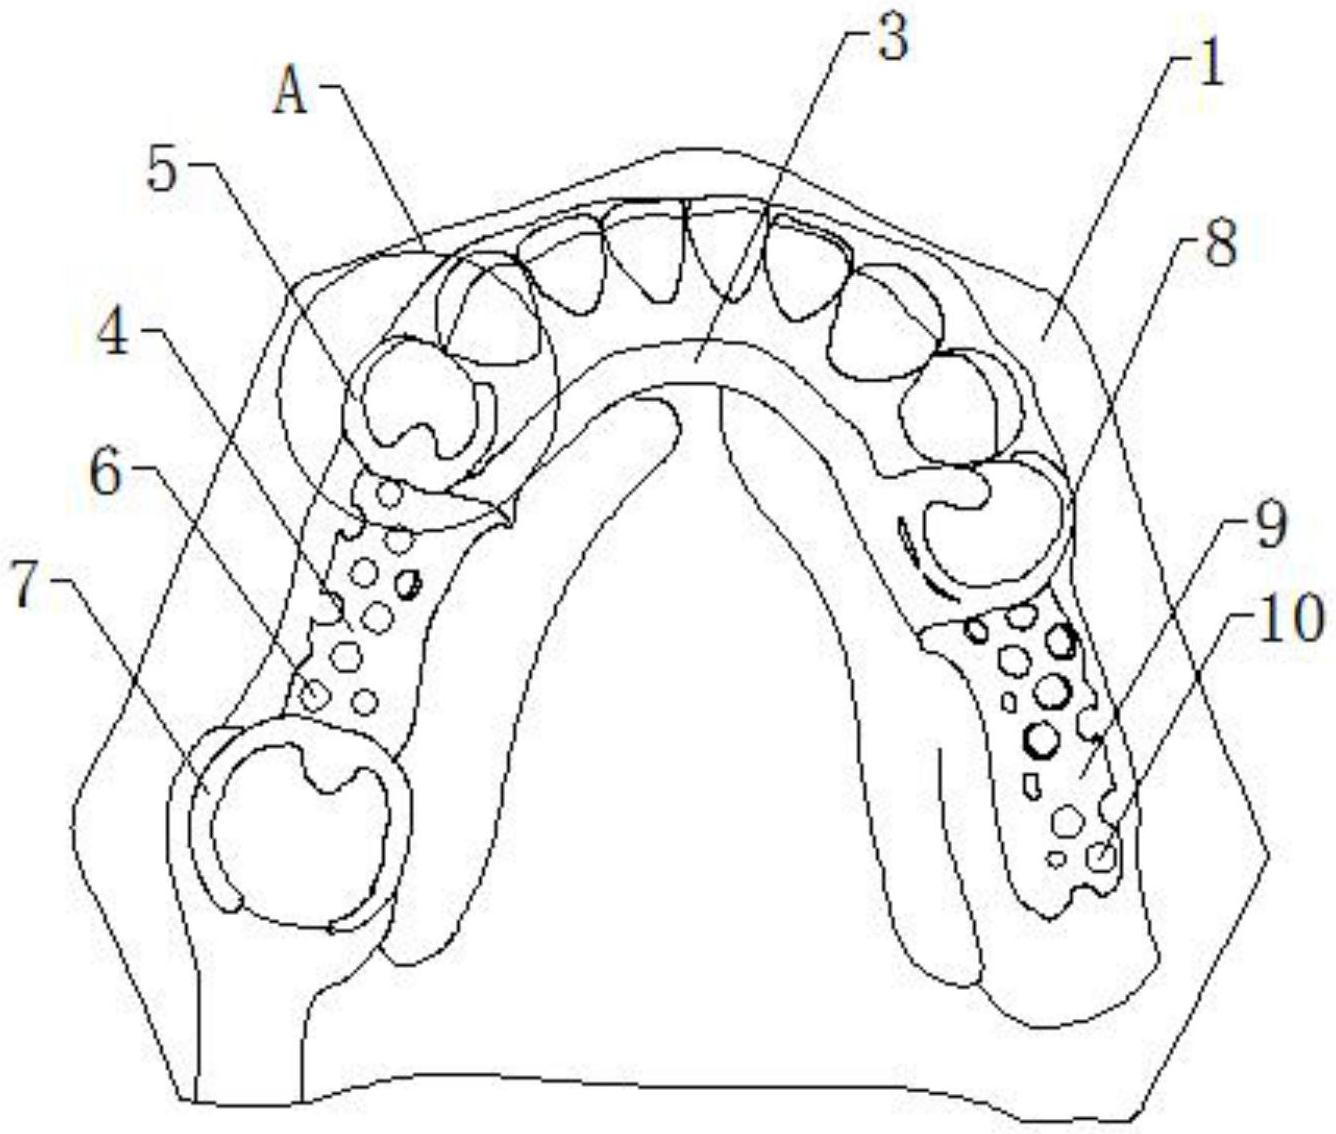 活动义齿支架设计图解图片